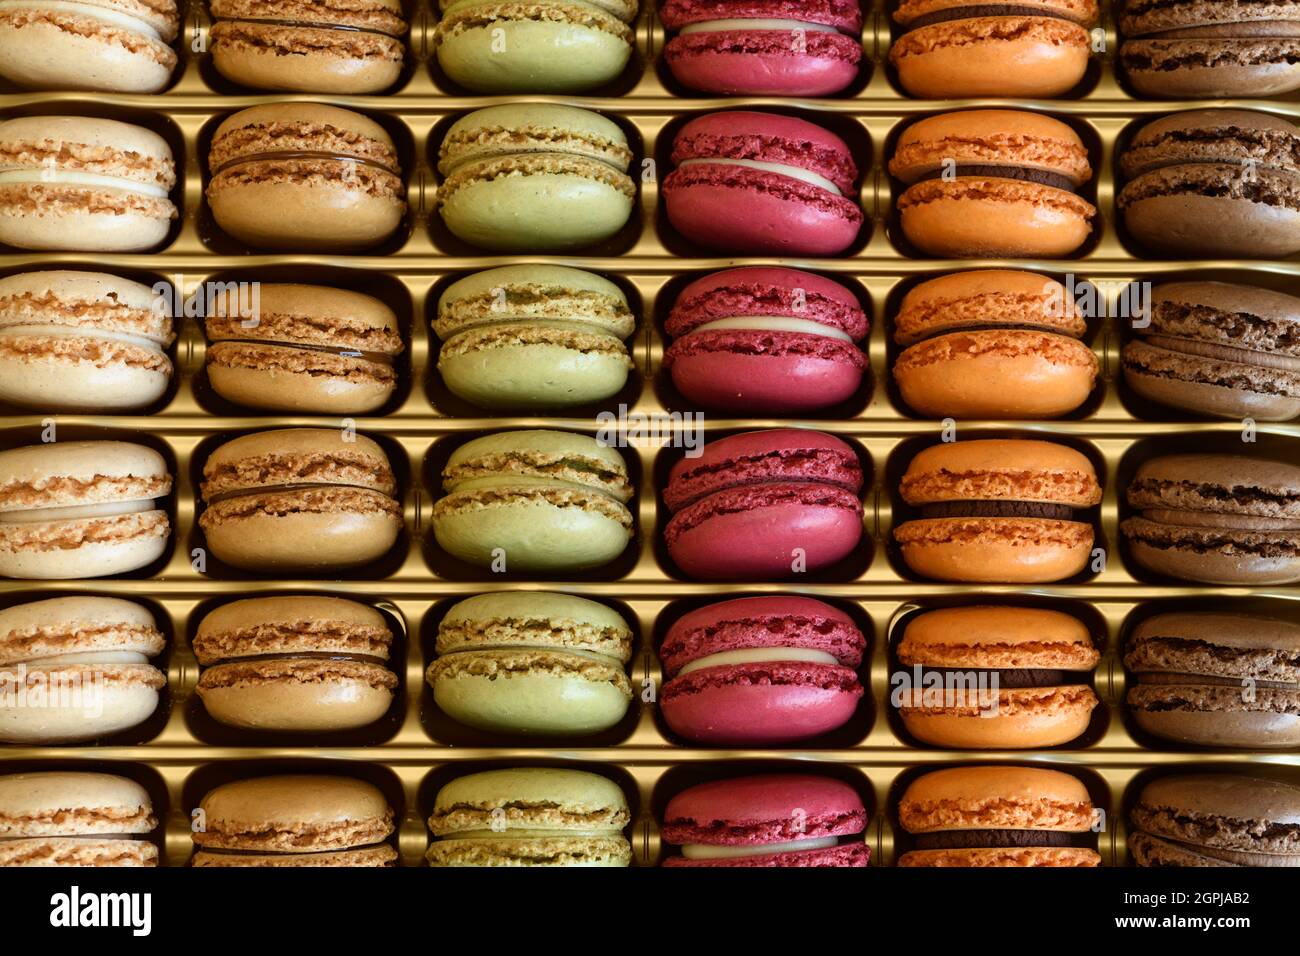 Sammlung von bunten französischen Macarons, die ein süßes Dessert-Cookie aus Baiser und Mandel sind Stockfoto